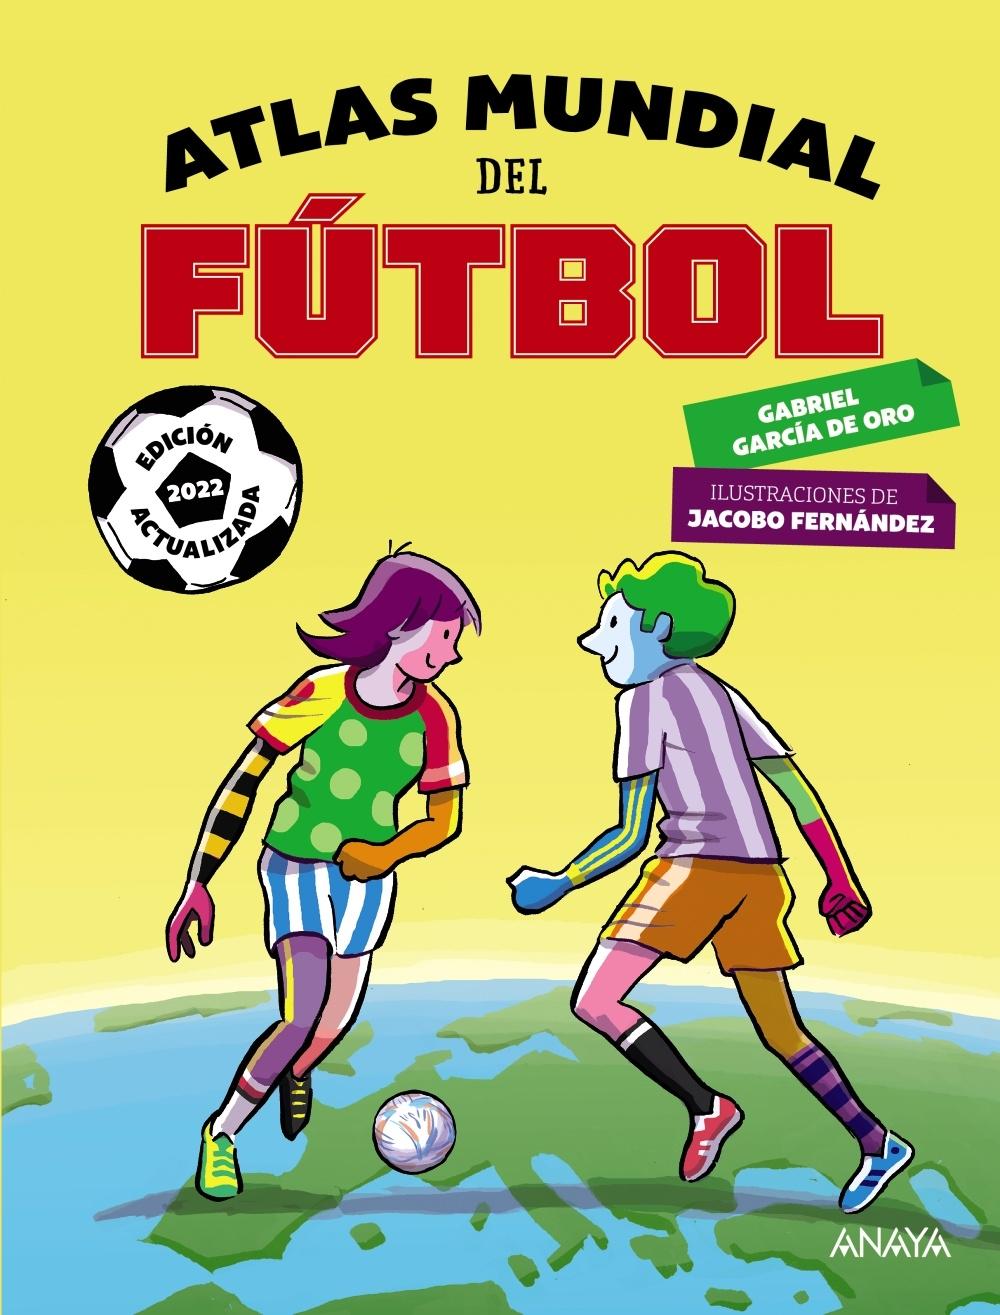 Atlas Mundial del Fútbol "Edición 2022". 